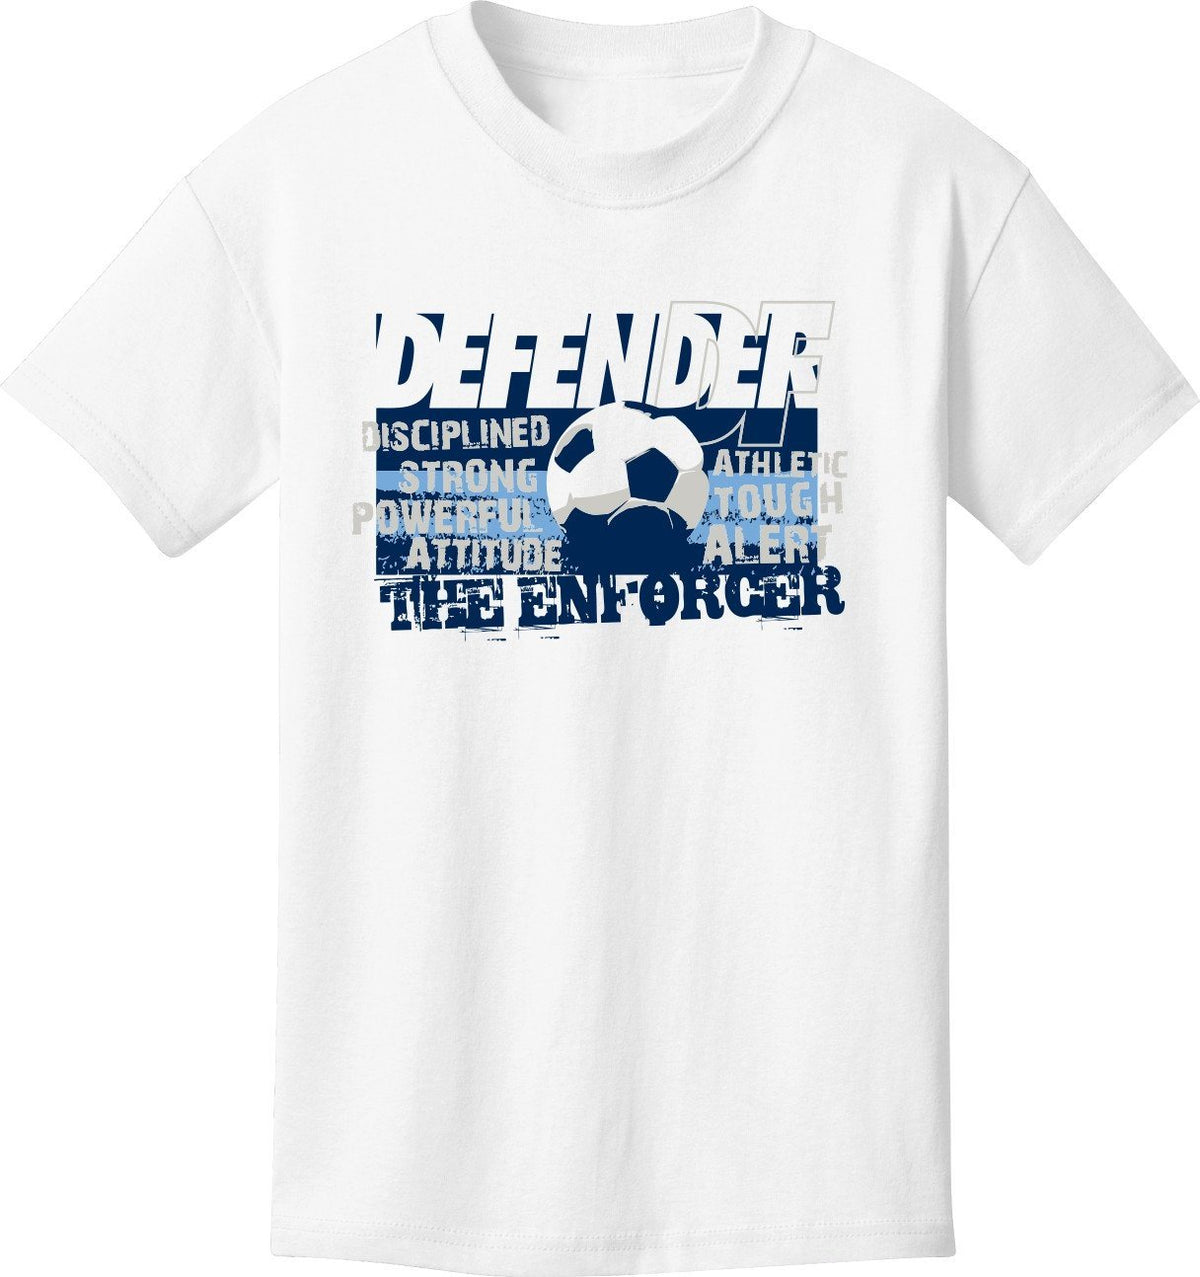 Utopia Defender Soccer Enforcer Short Sleeve Soccer T-Shirt Humorous Shirt Utopia Adult Small White 